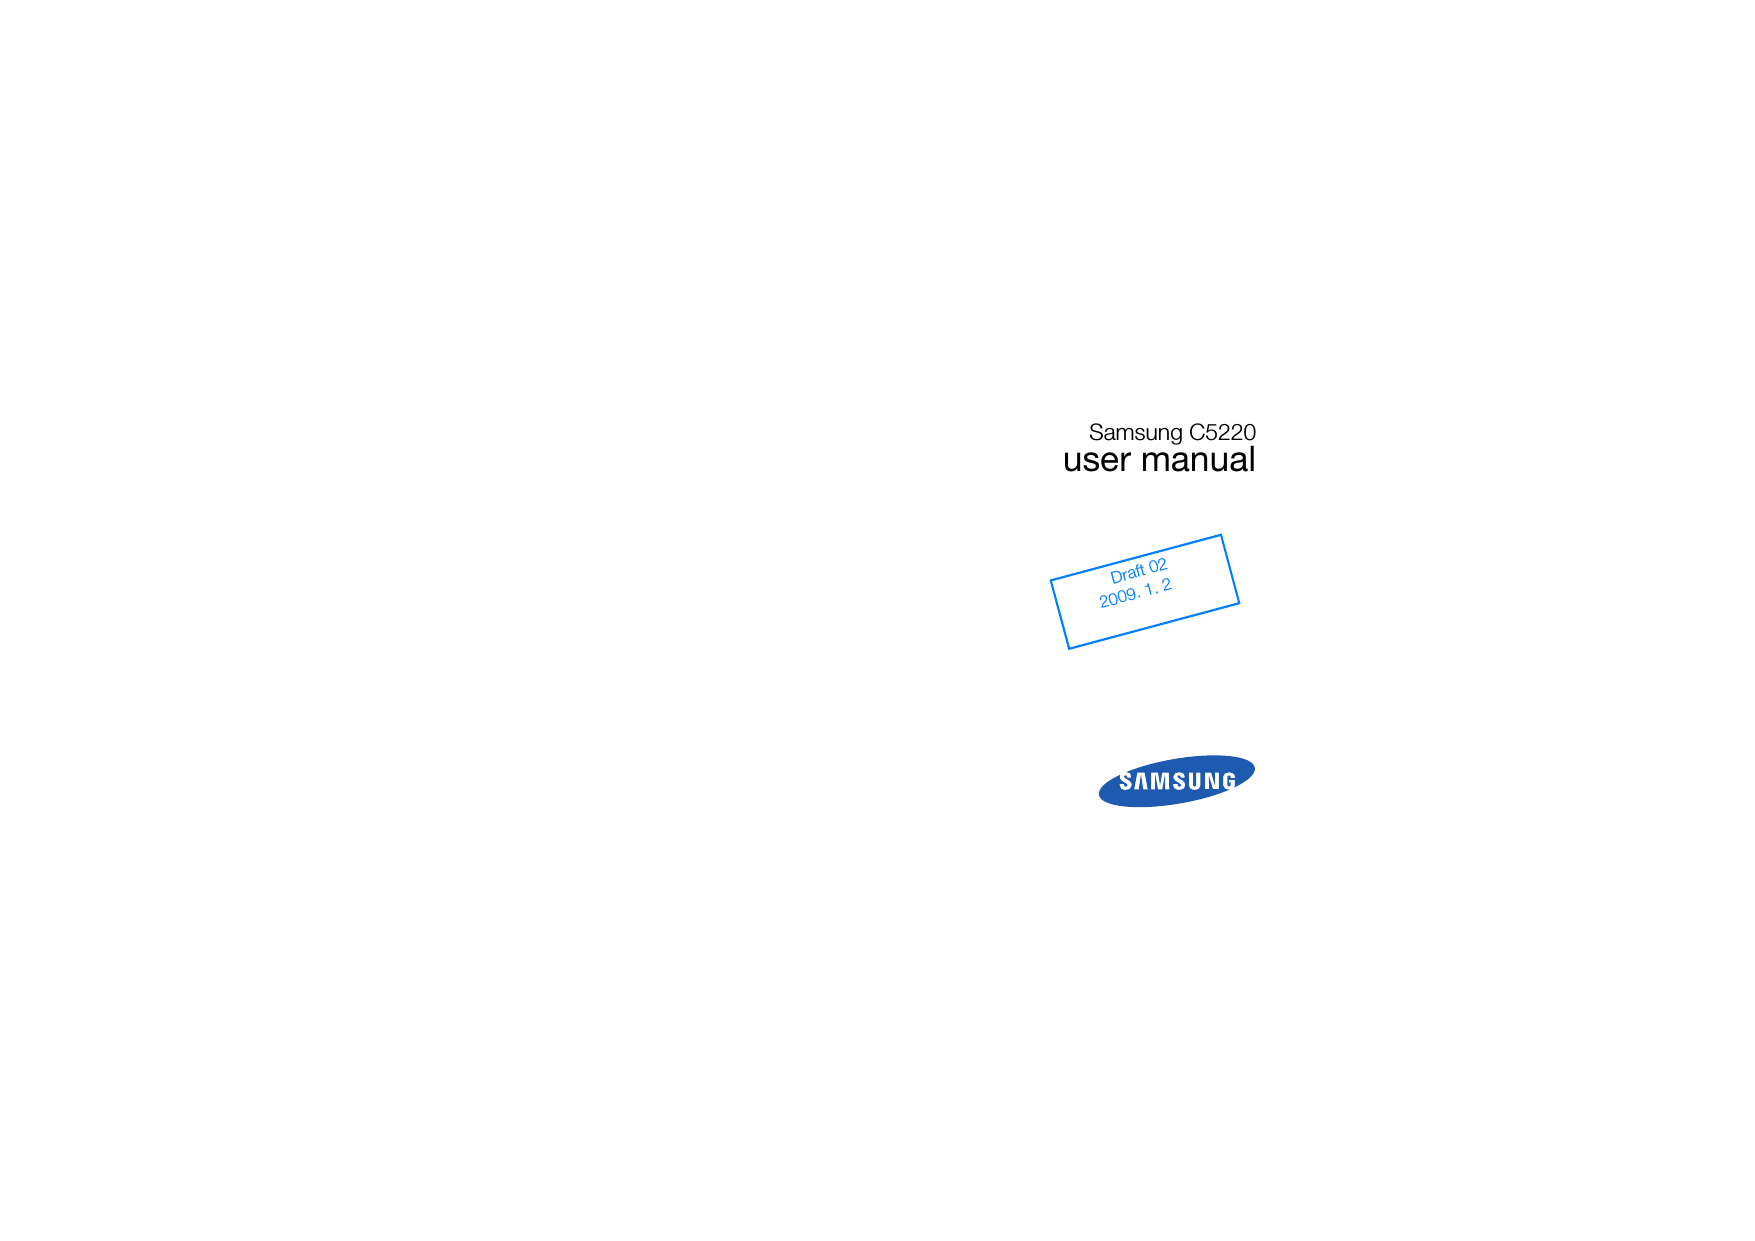 Samsung C5220user manualDraft 022009. 1.     2